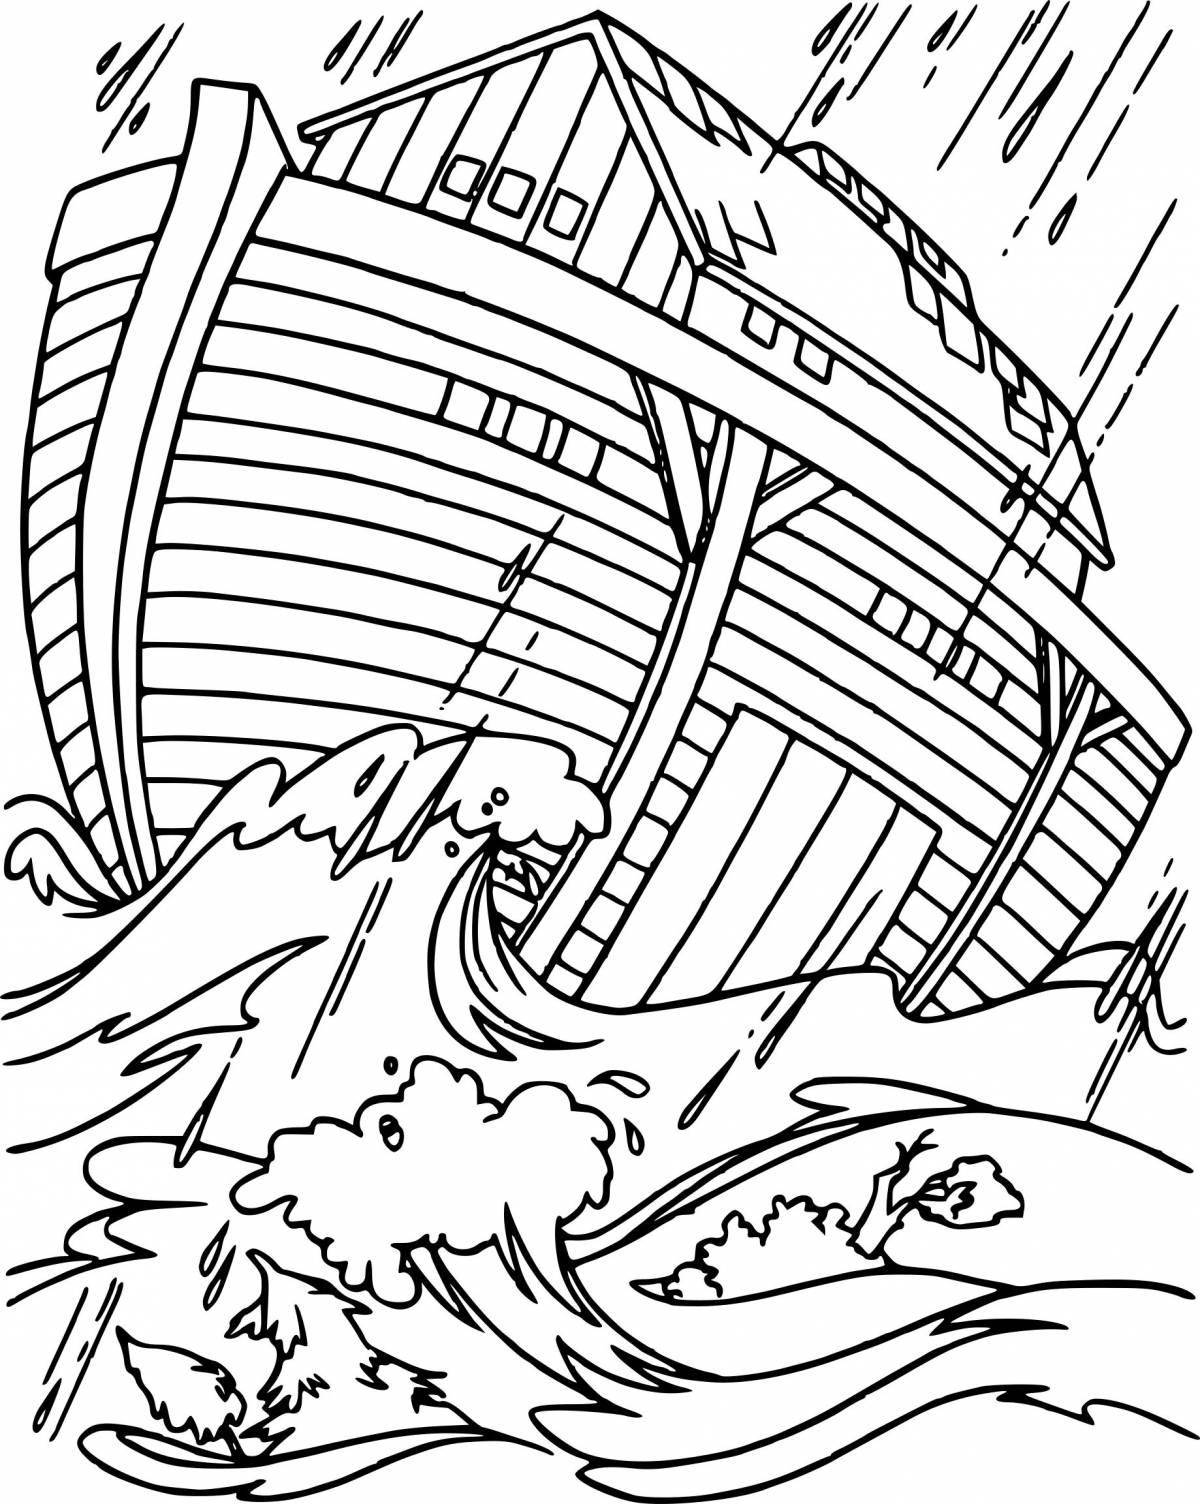 Noah's Ark for kids #3